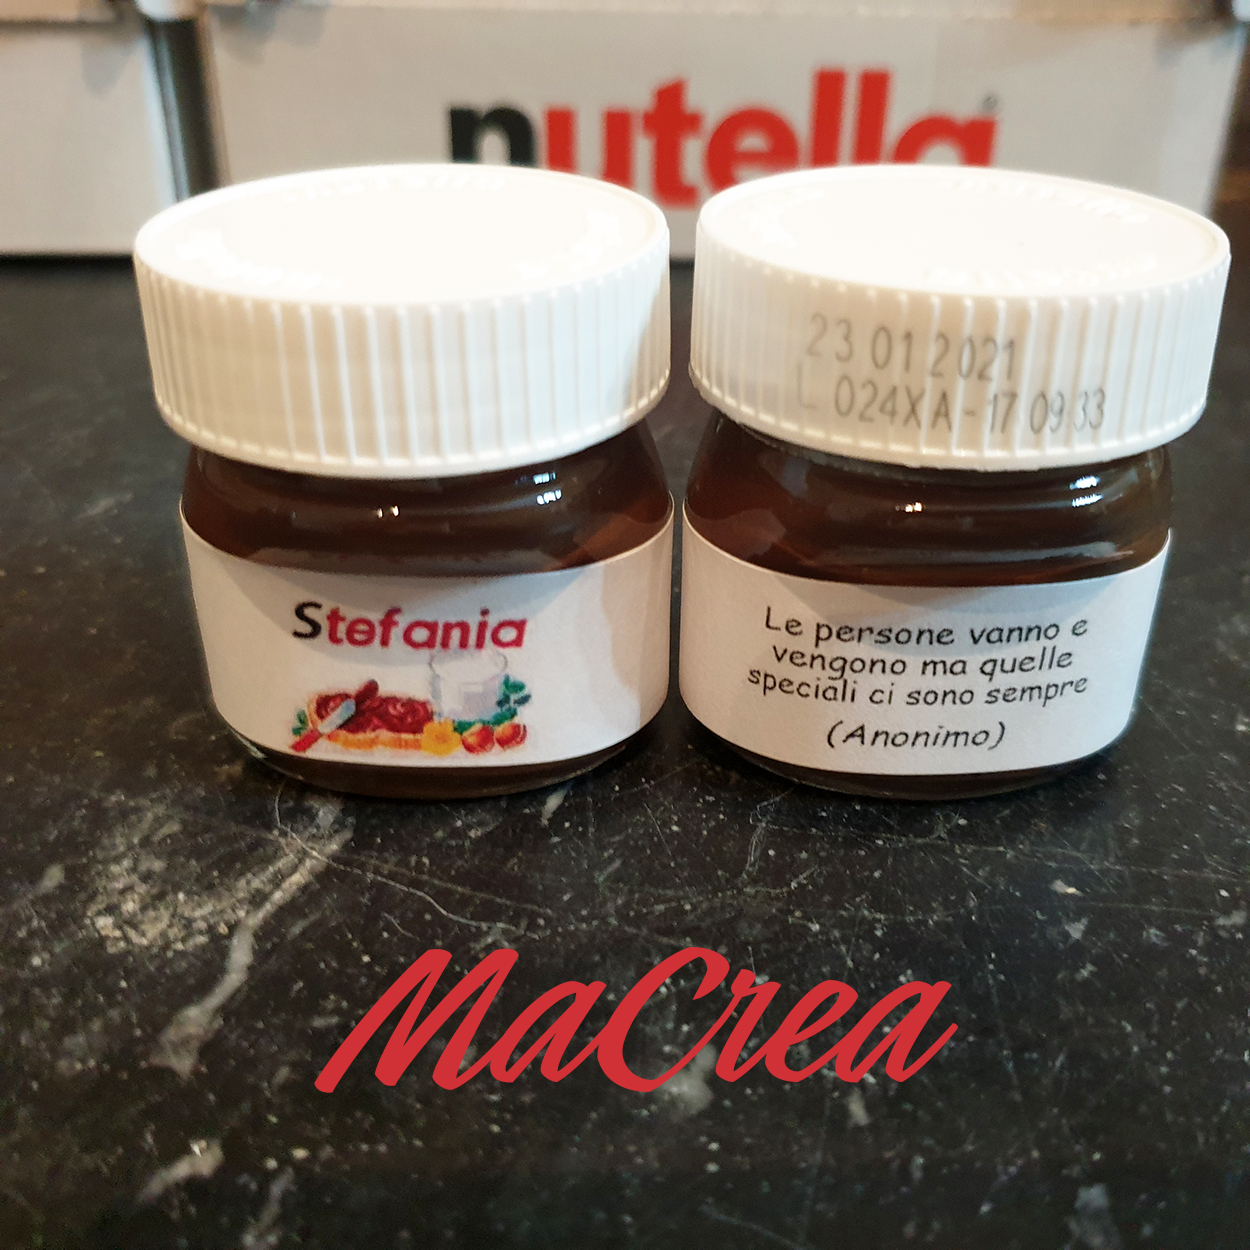 Vasetto Nutella 25gr. personalizzato fronte/retro by MaCrea